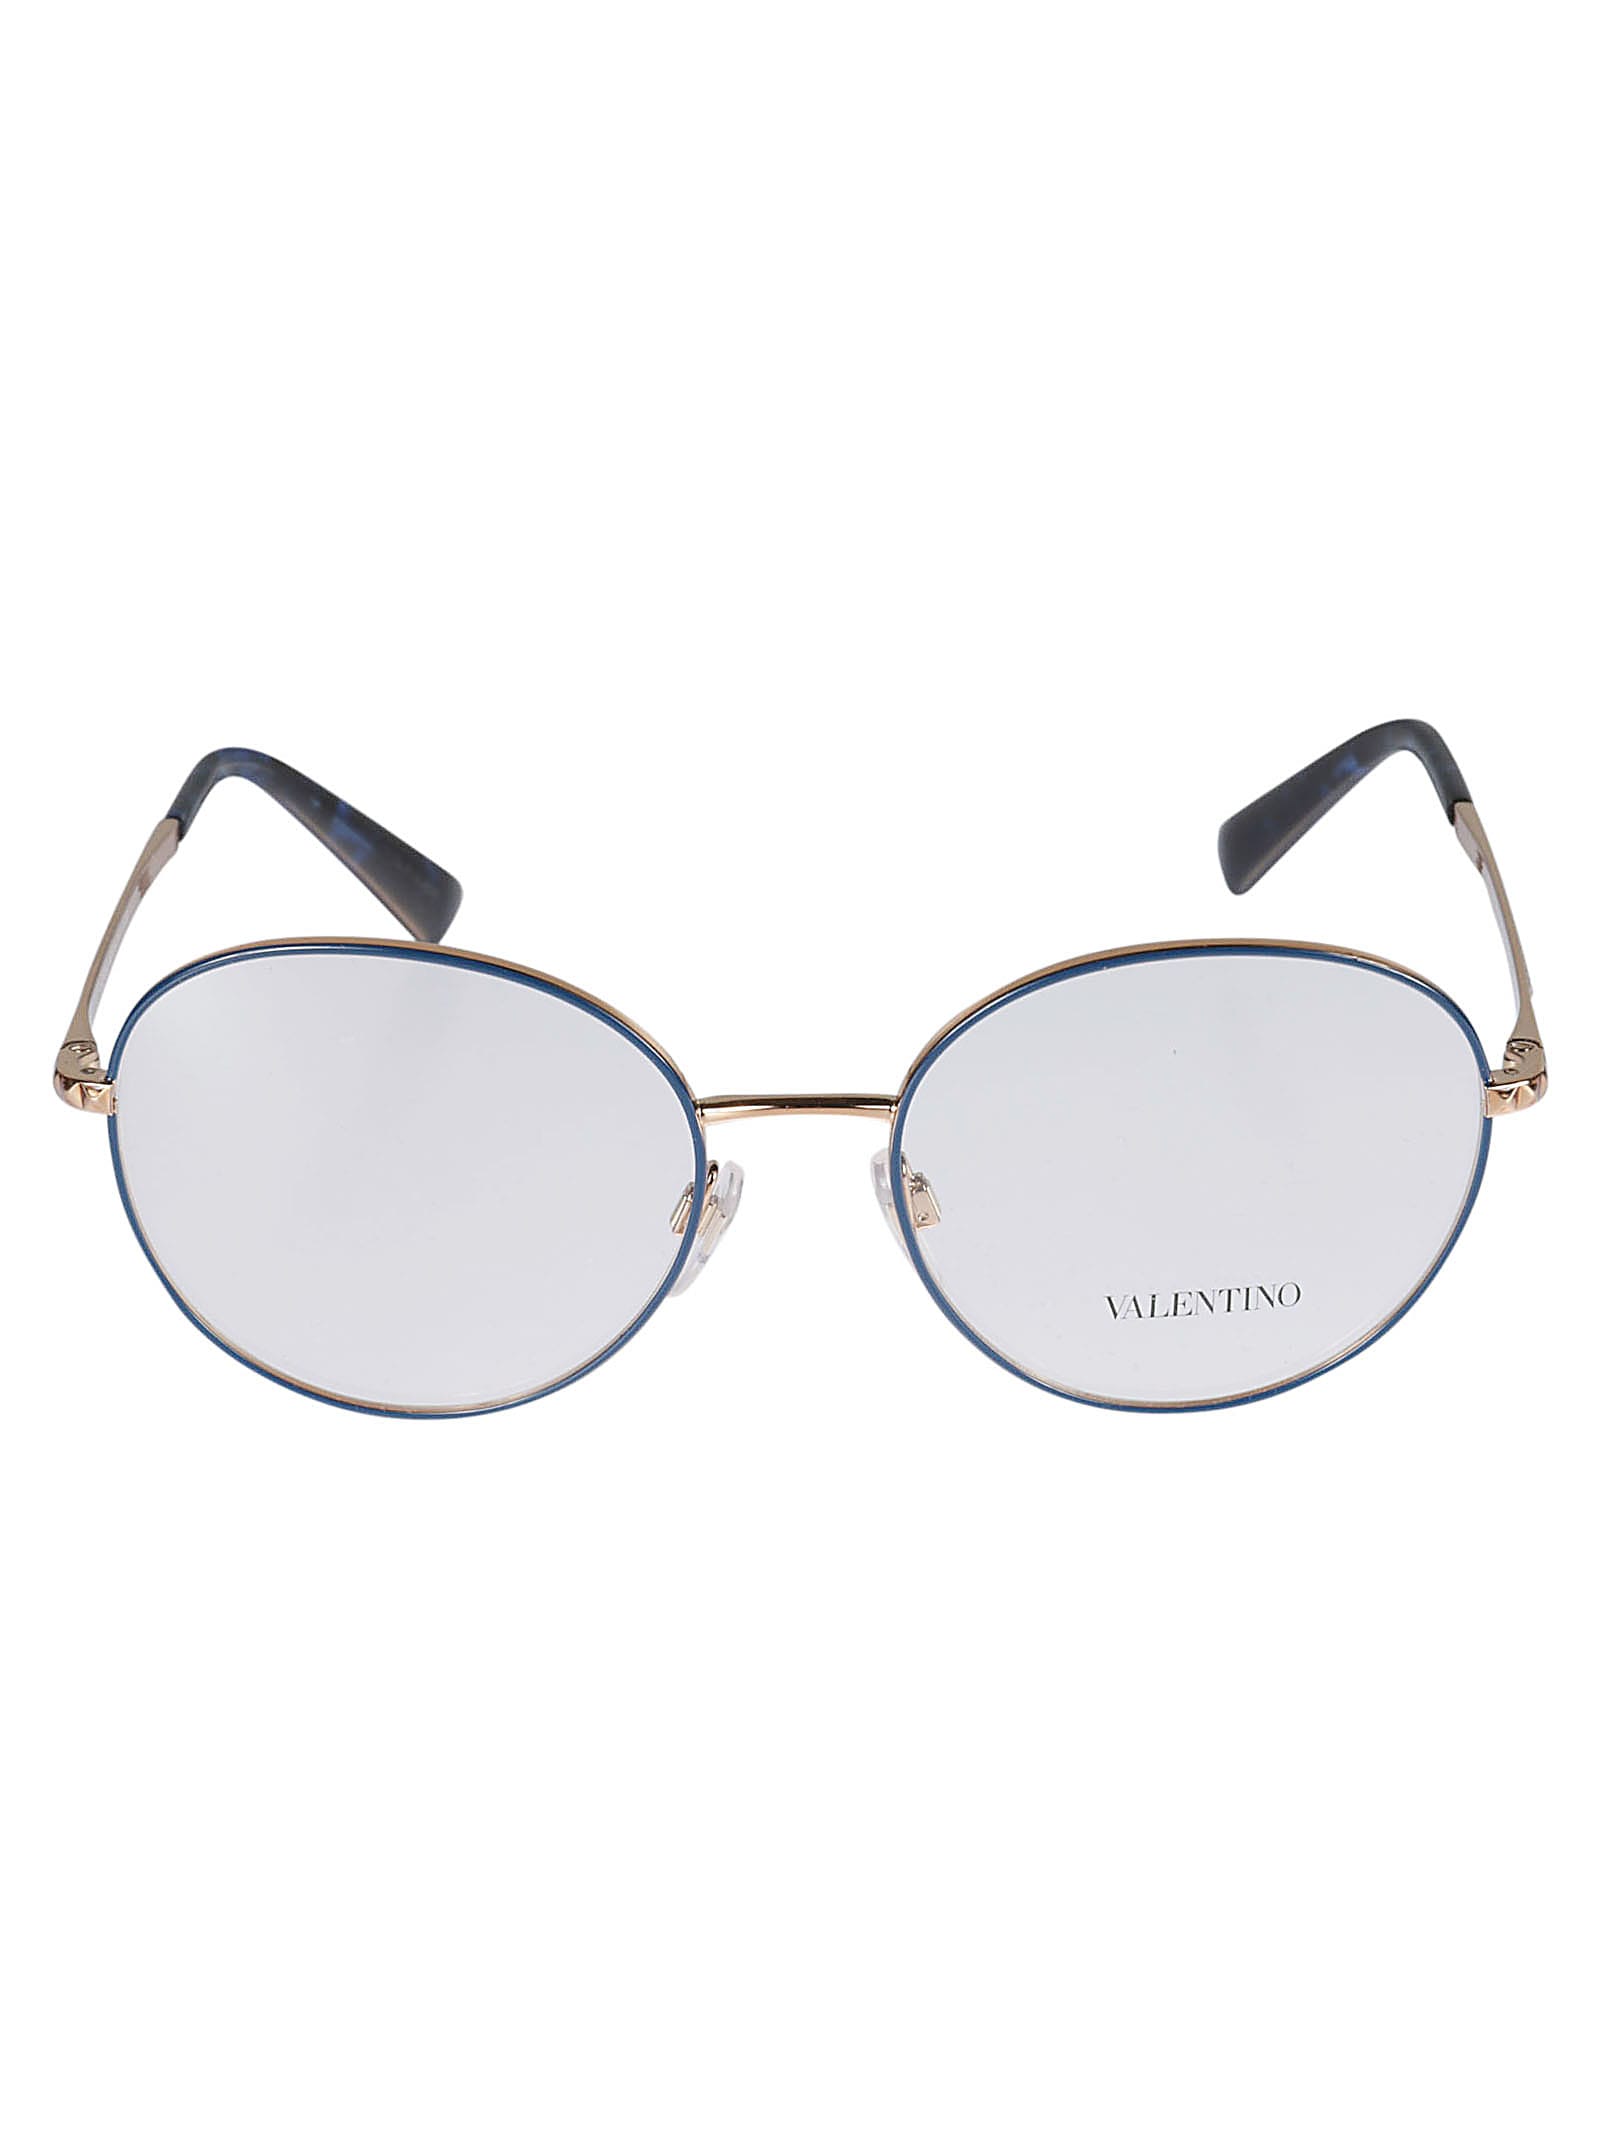 Valentino Vista3031 Glasses